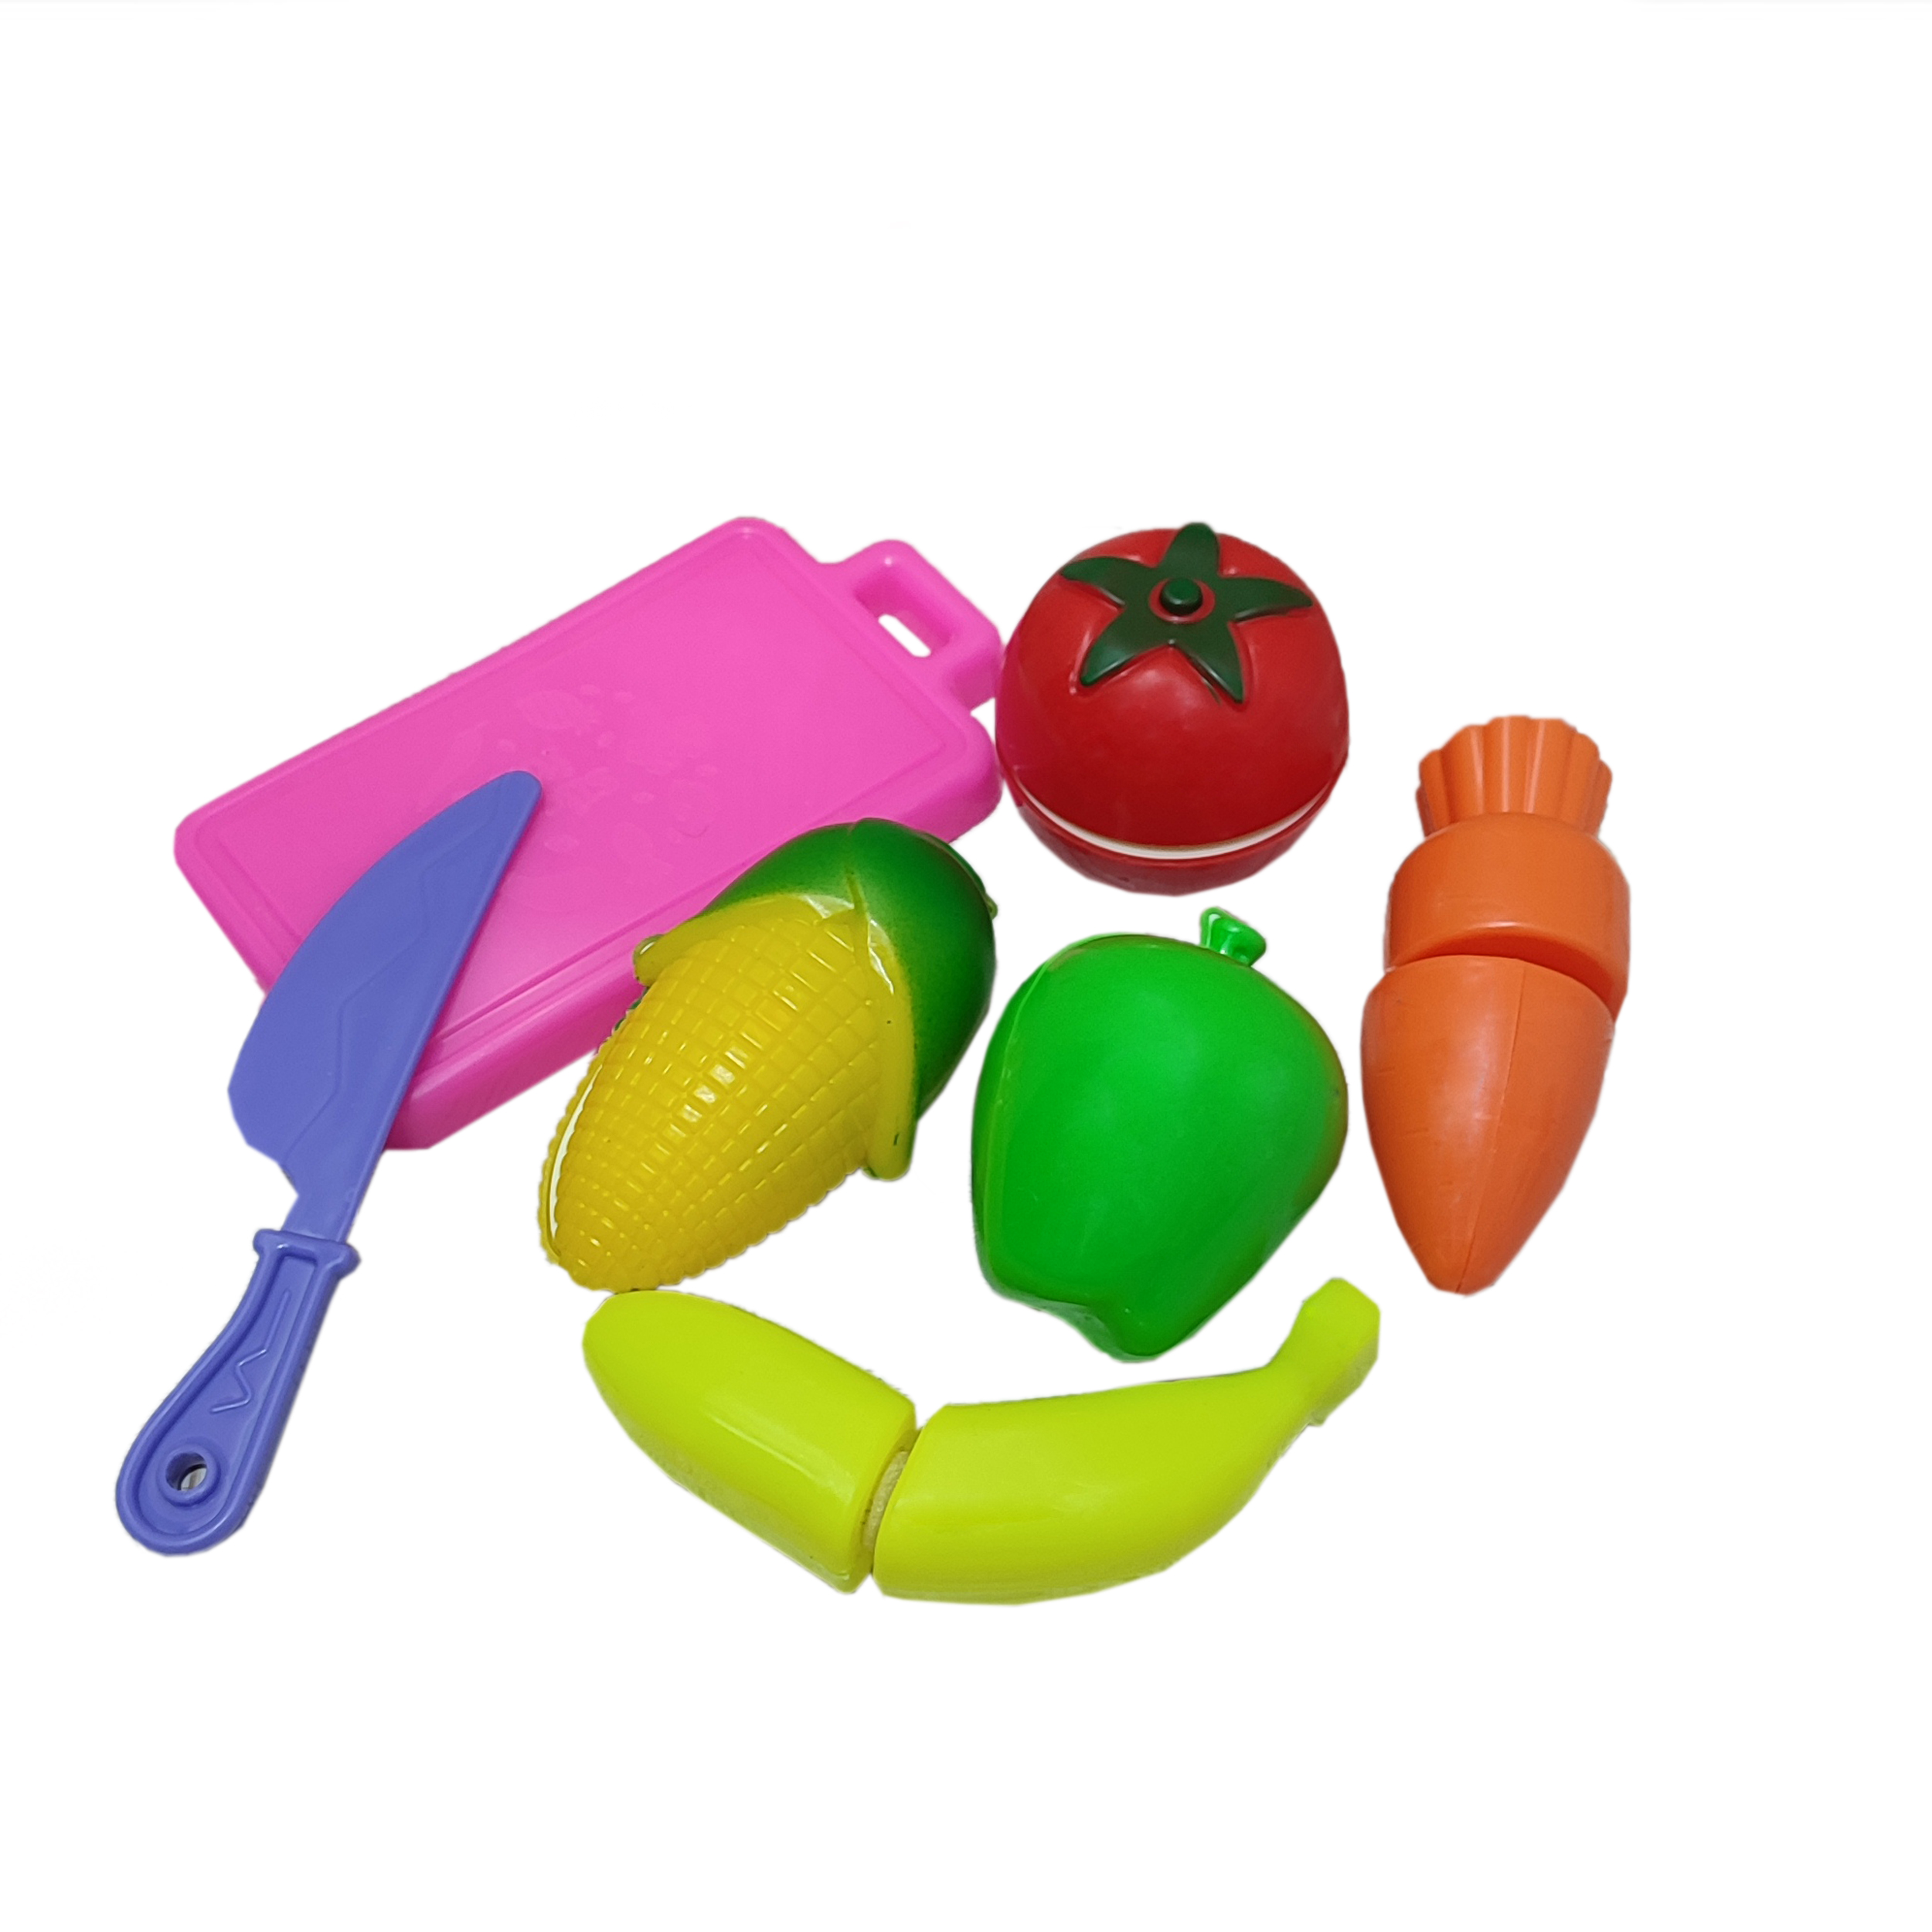 ست اسباب بازی آشپزخانه مدل برش میوه و سبزیجات بسته 7 عددی